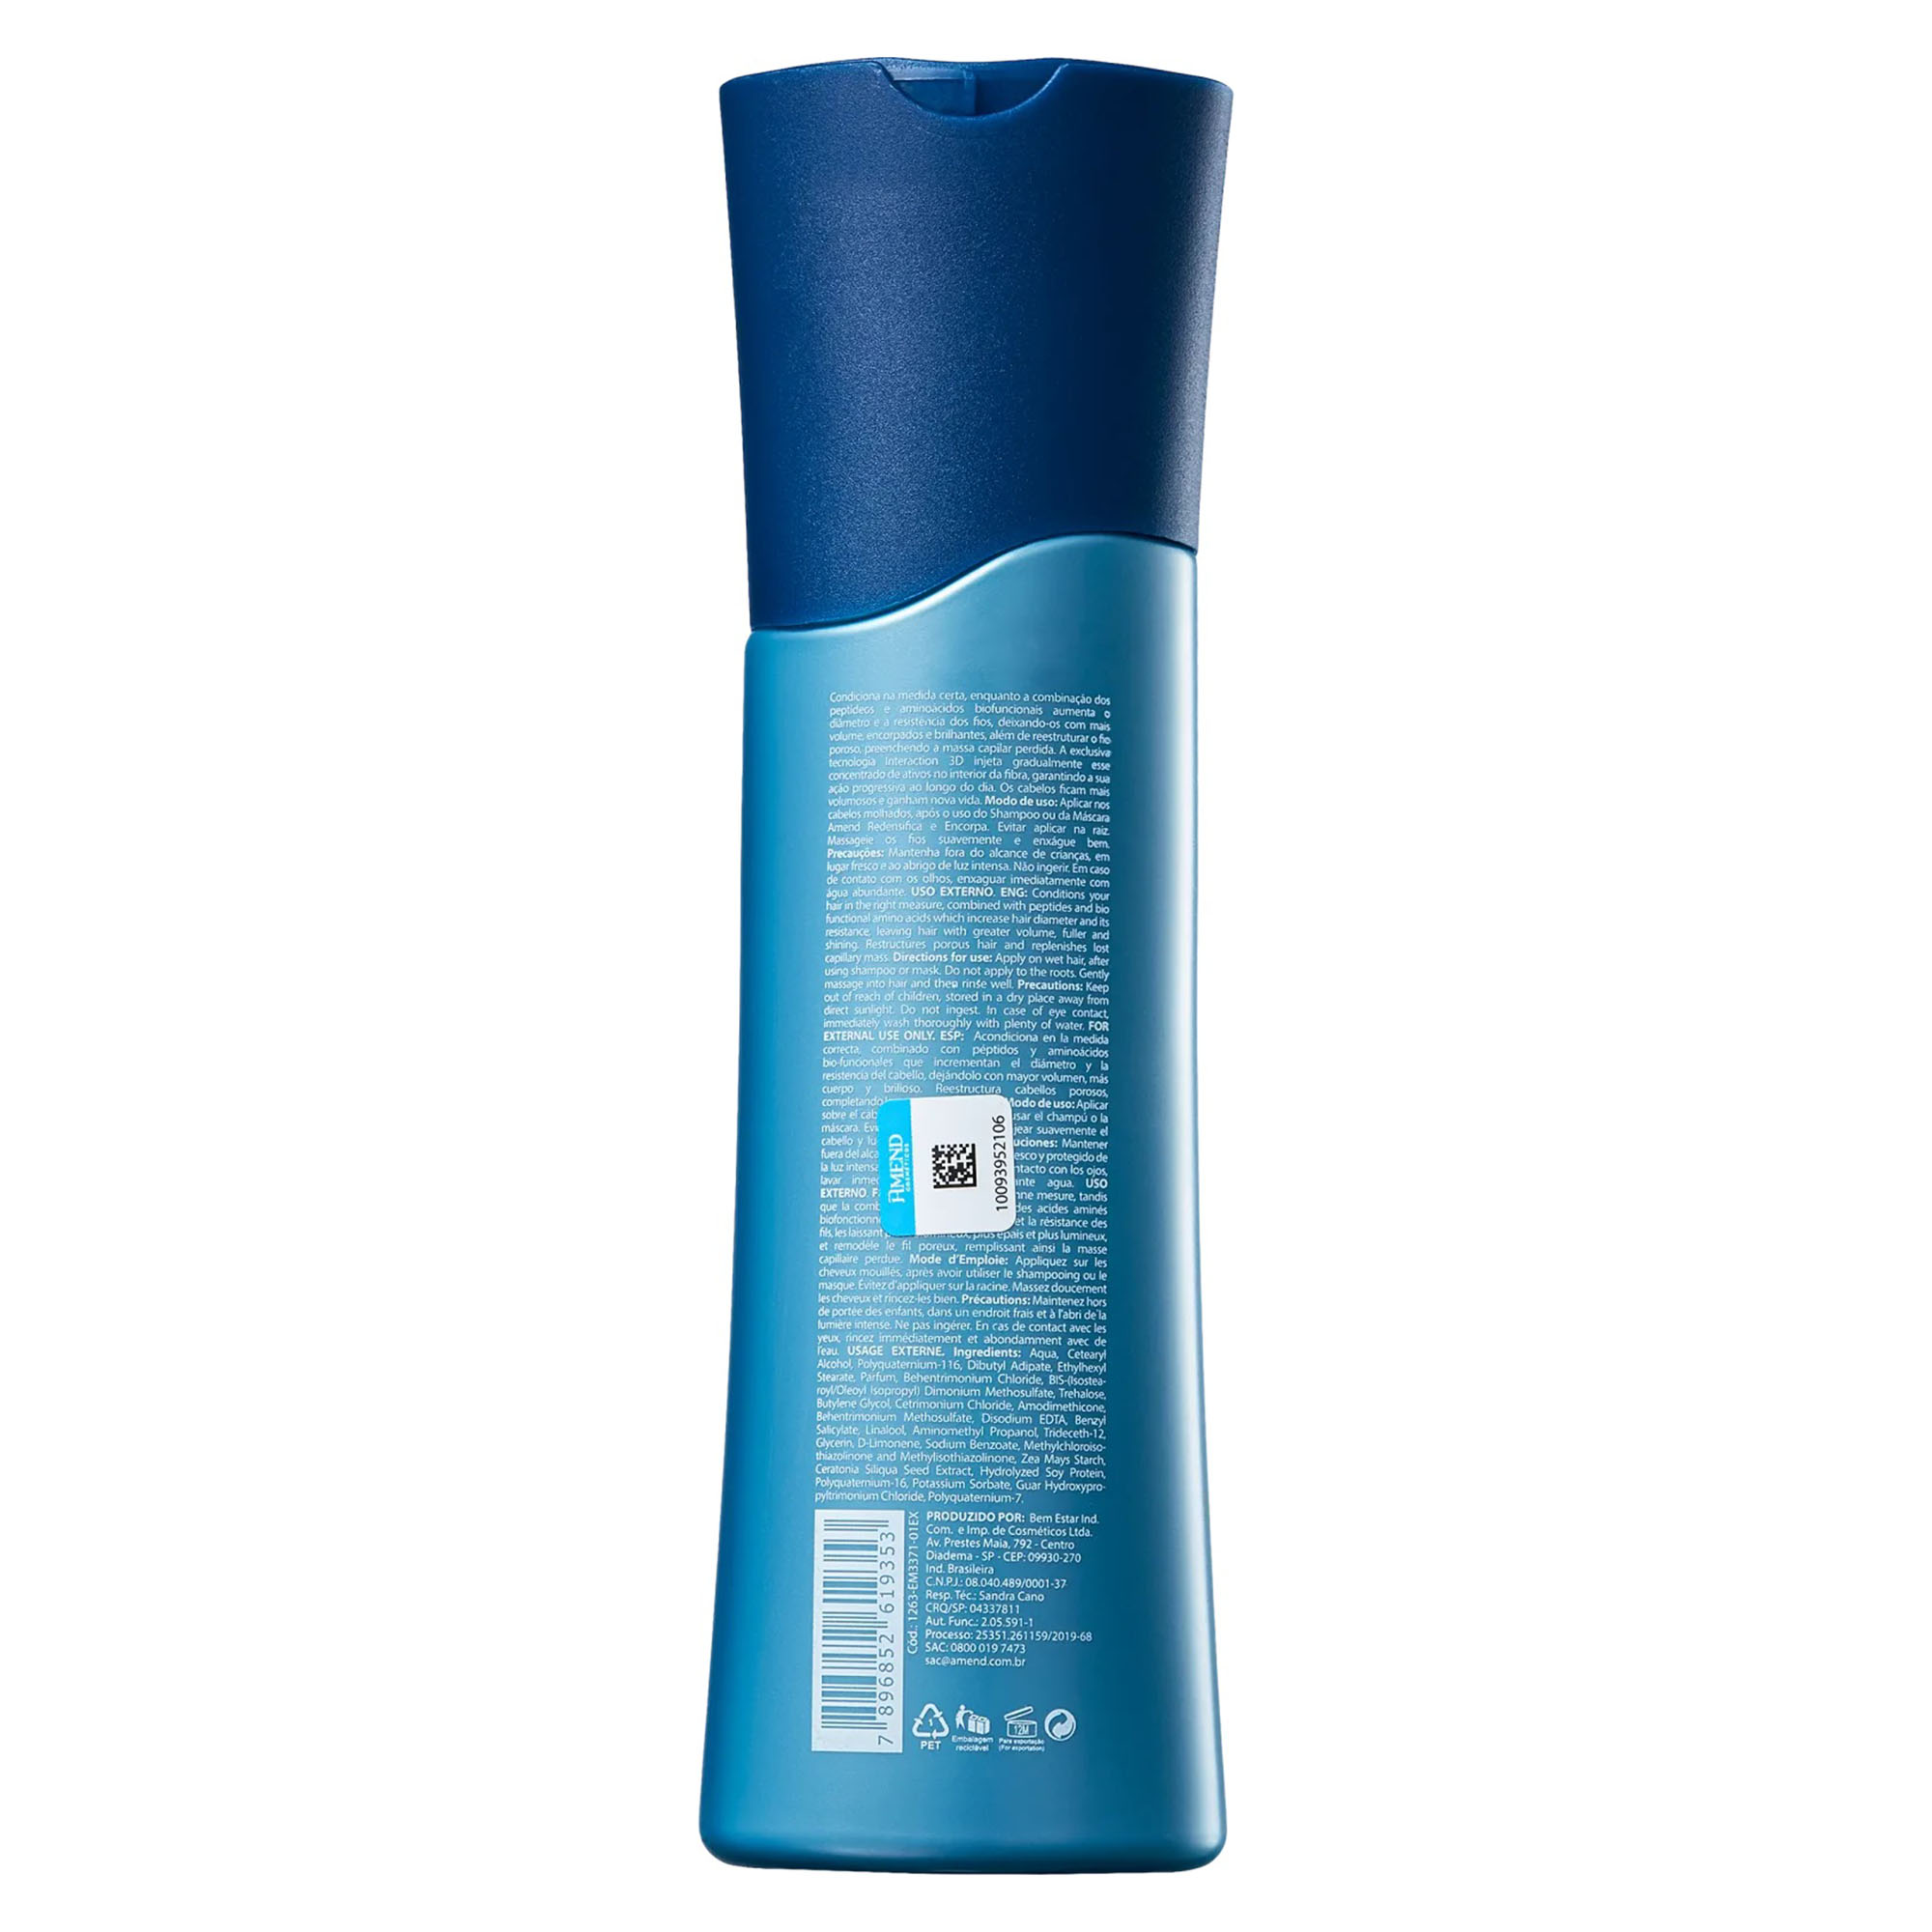 Kit Amend Redensifica e Encorpa Shampoo 250ml + Condicionador 250ml + Mascara 300g - Foto 4